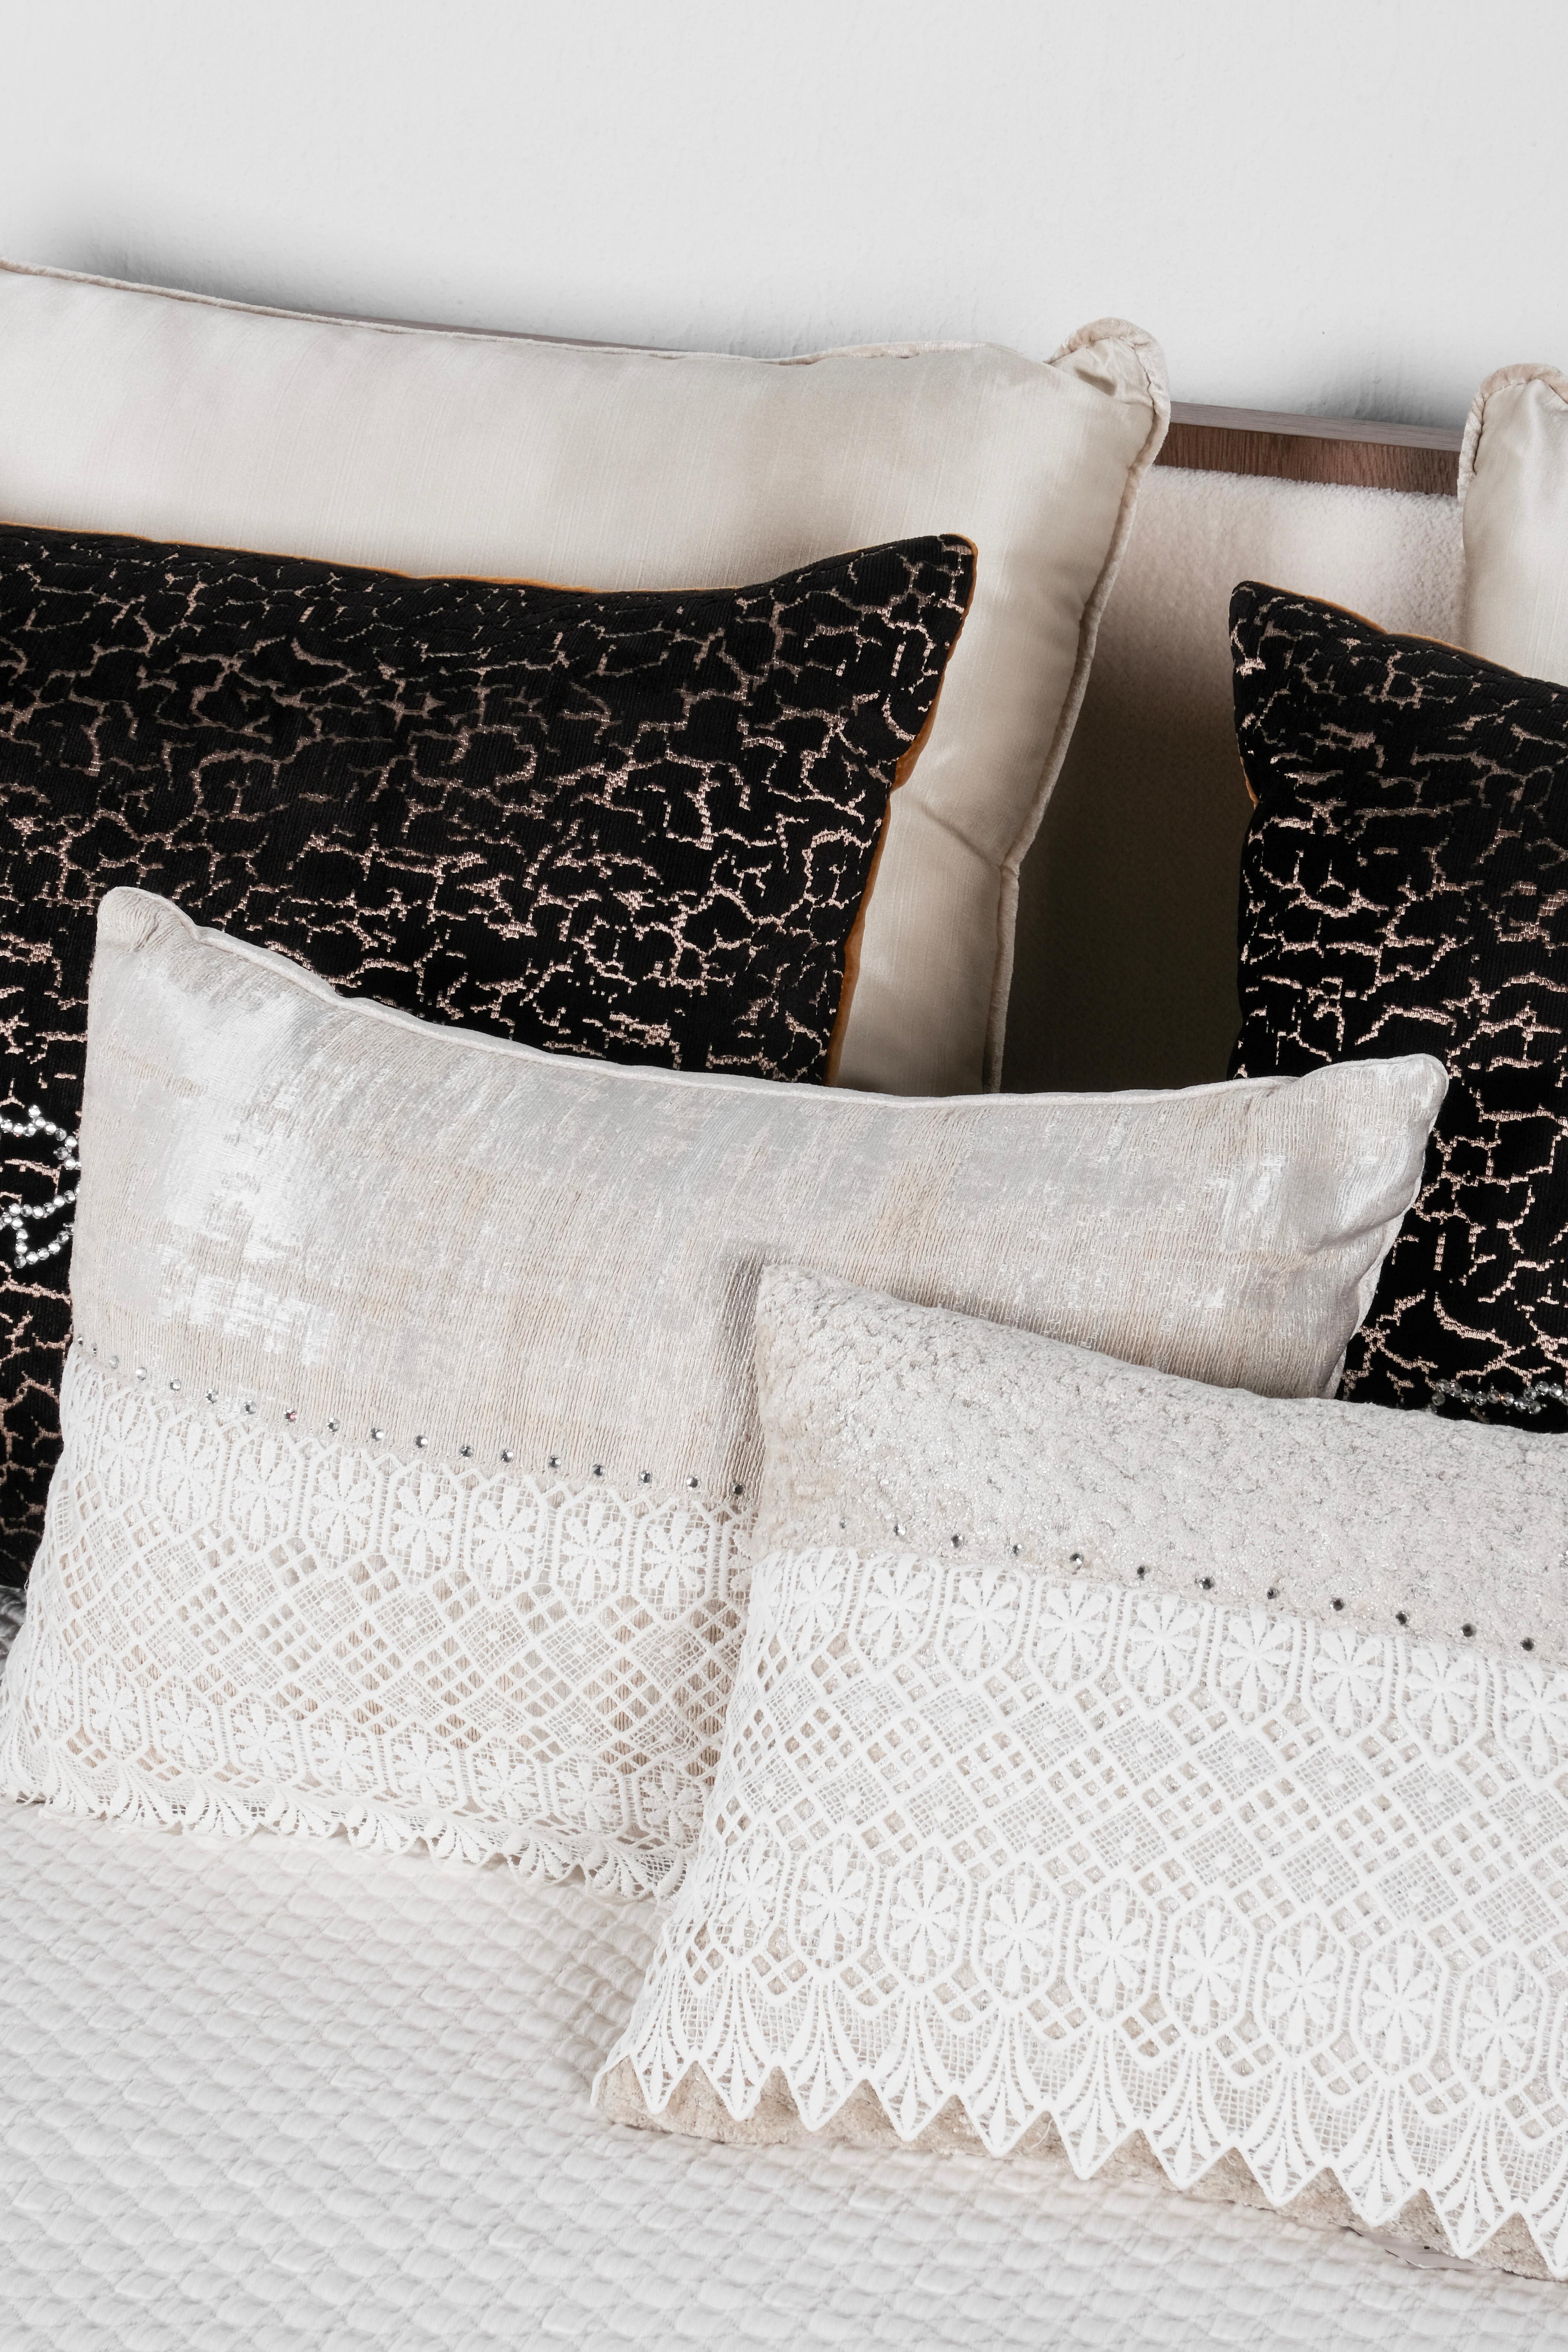 Portuguese Set of 6 Decorative Pillows Cream Black and White Lace Swarovski Lusitanus For Sale